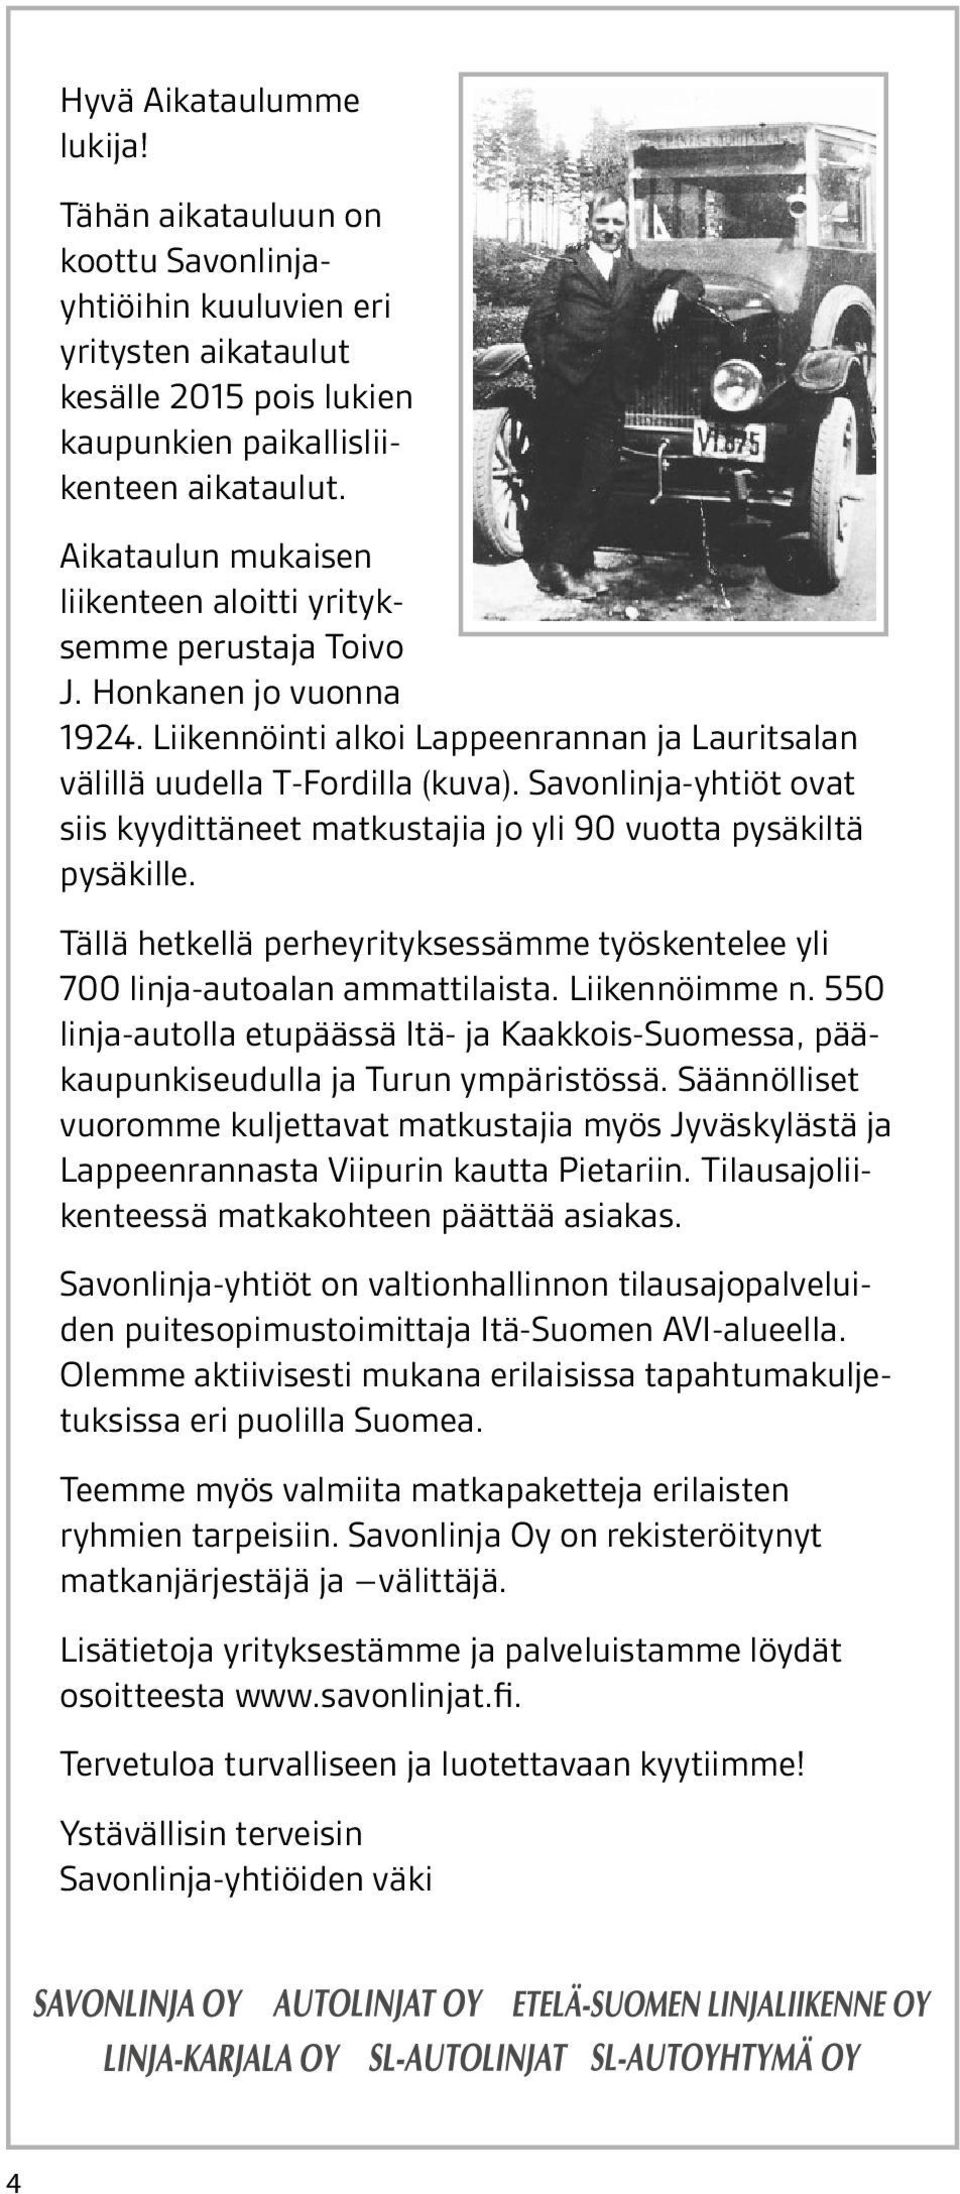 on Lisätietoja koottu Savonlinjayhtiöihin kuuluvien löydät osoit- eri yrityksestämme ja palveluistamme teesta yritysten www.savonlinja.fi aikataulut.